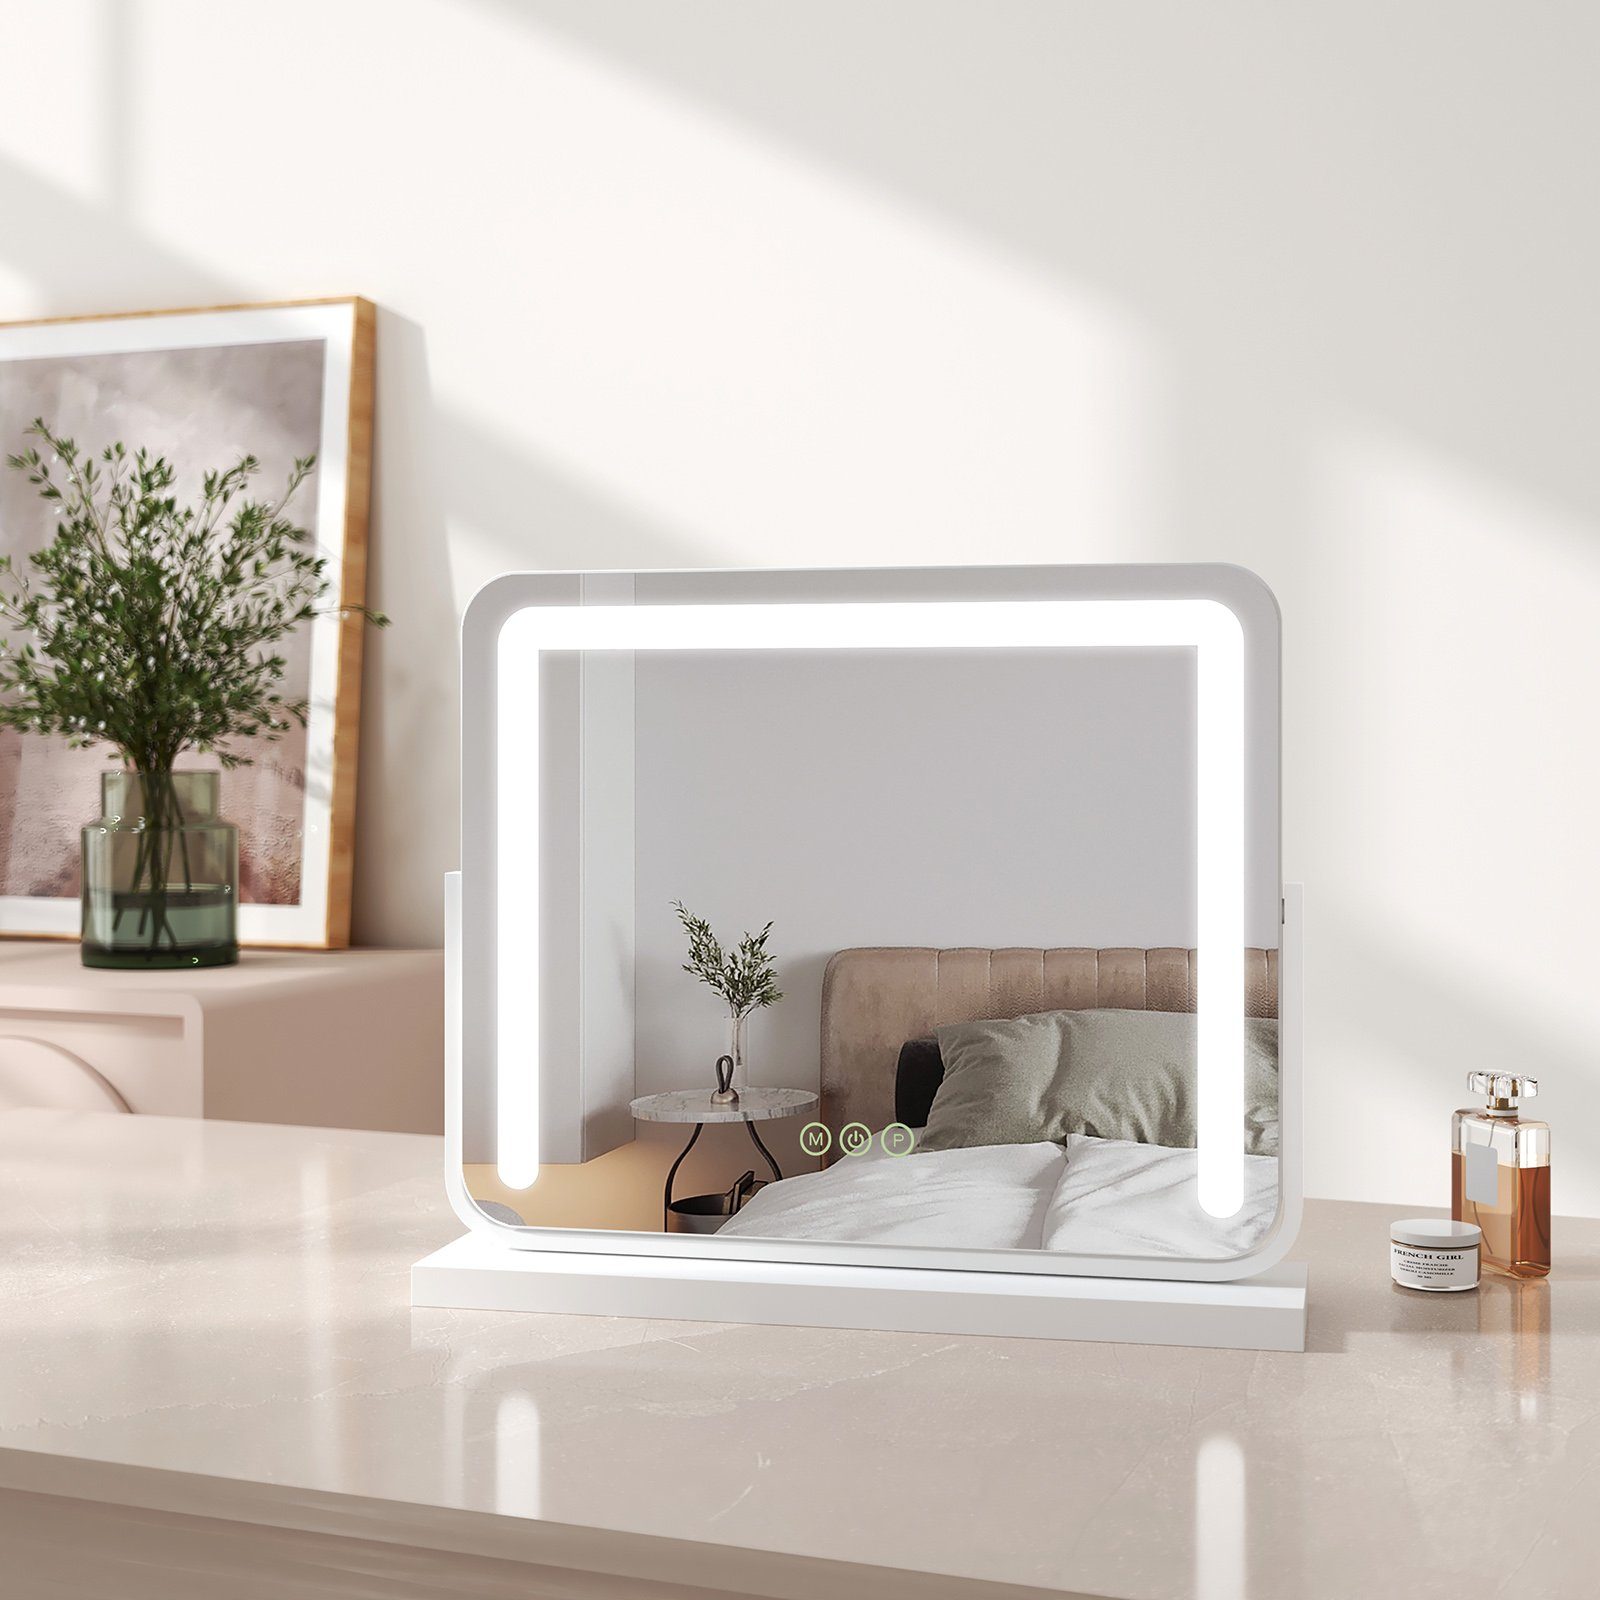 EMKE Kosmetikspiegel Schminkspiegel LED Kosmetikspiegel mit Beleuchtung Tischspiegel, mit Touch, 3 Lichtfarben Dimmbar, Memory-Funktion, 360° Drehbar Weiß